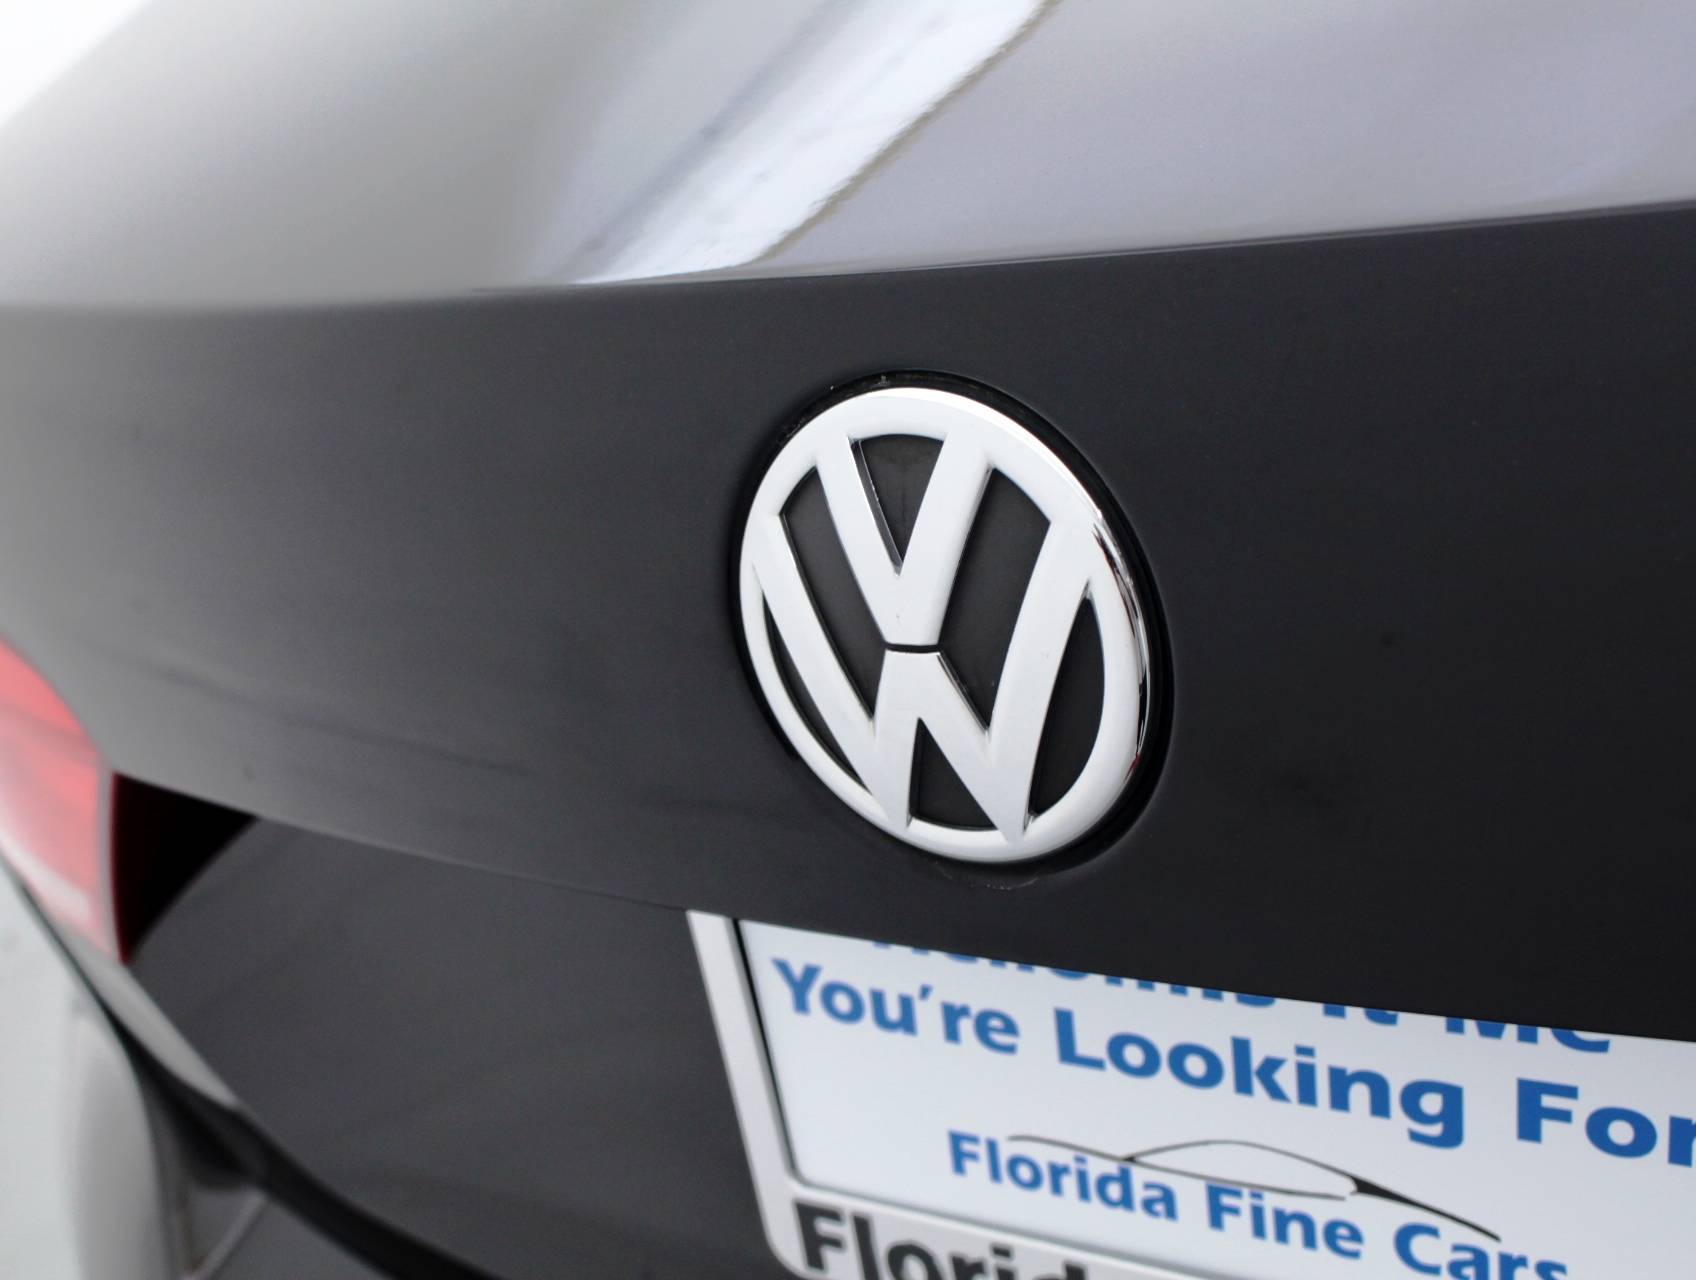 Florida Fine Cars - Used VOLKSWAGEN PASSAT 2013 MIAMI Sel-premium